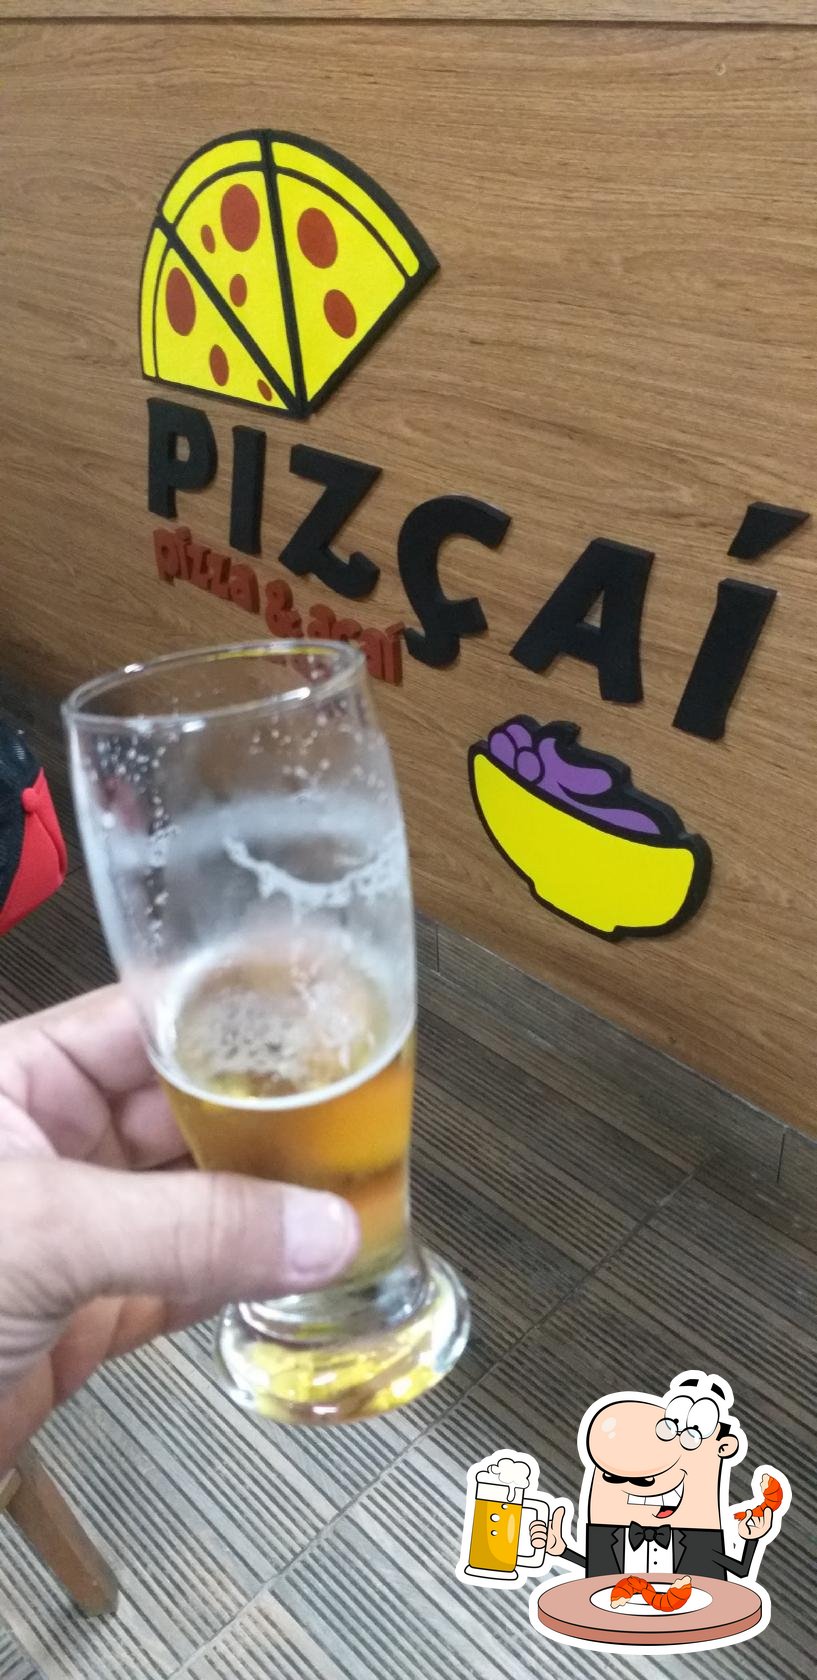 Pizçaí, Pizza place